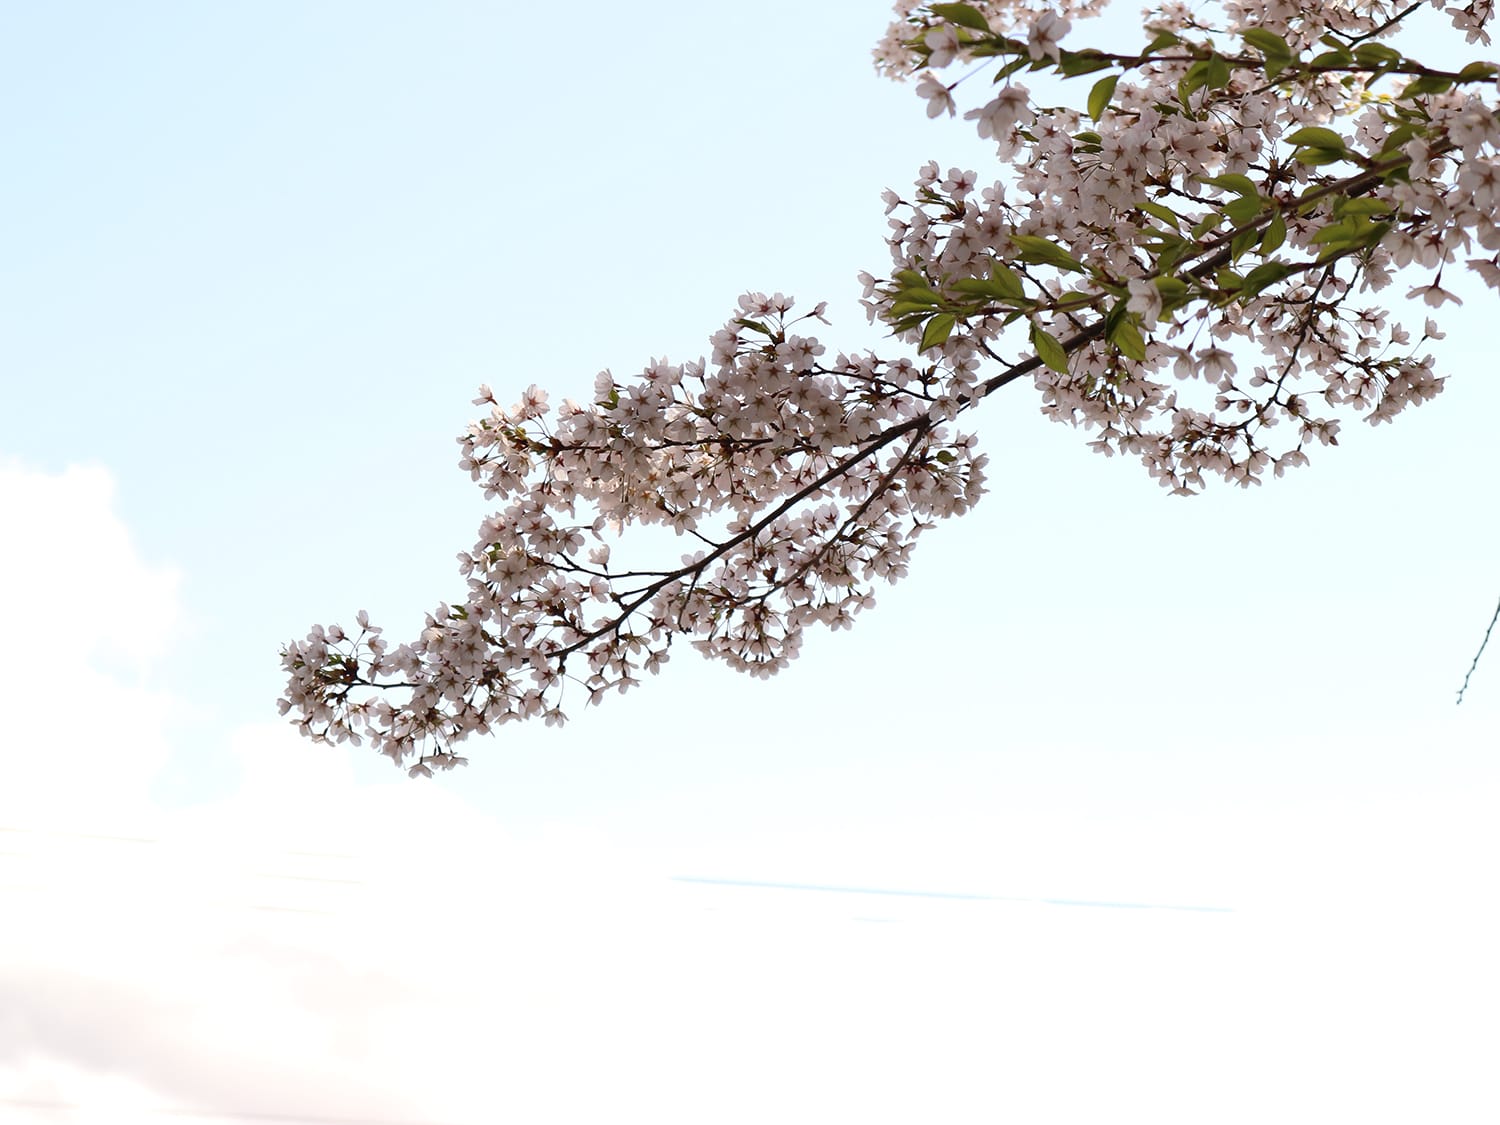 大学に行く途中の坂で撮った写真です。待ち遠しかった桜が咲いて、空に向かってのびる桜が好きだなと思って撮りました。